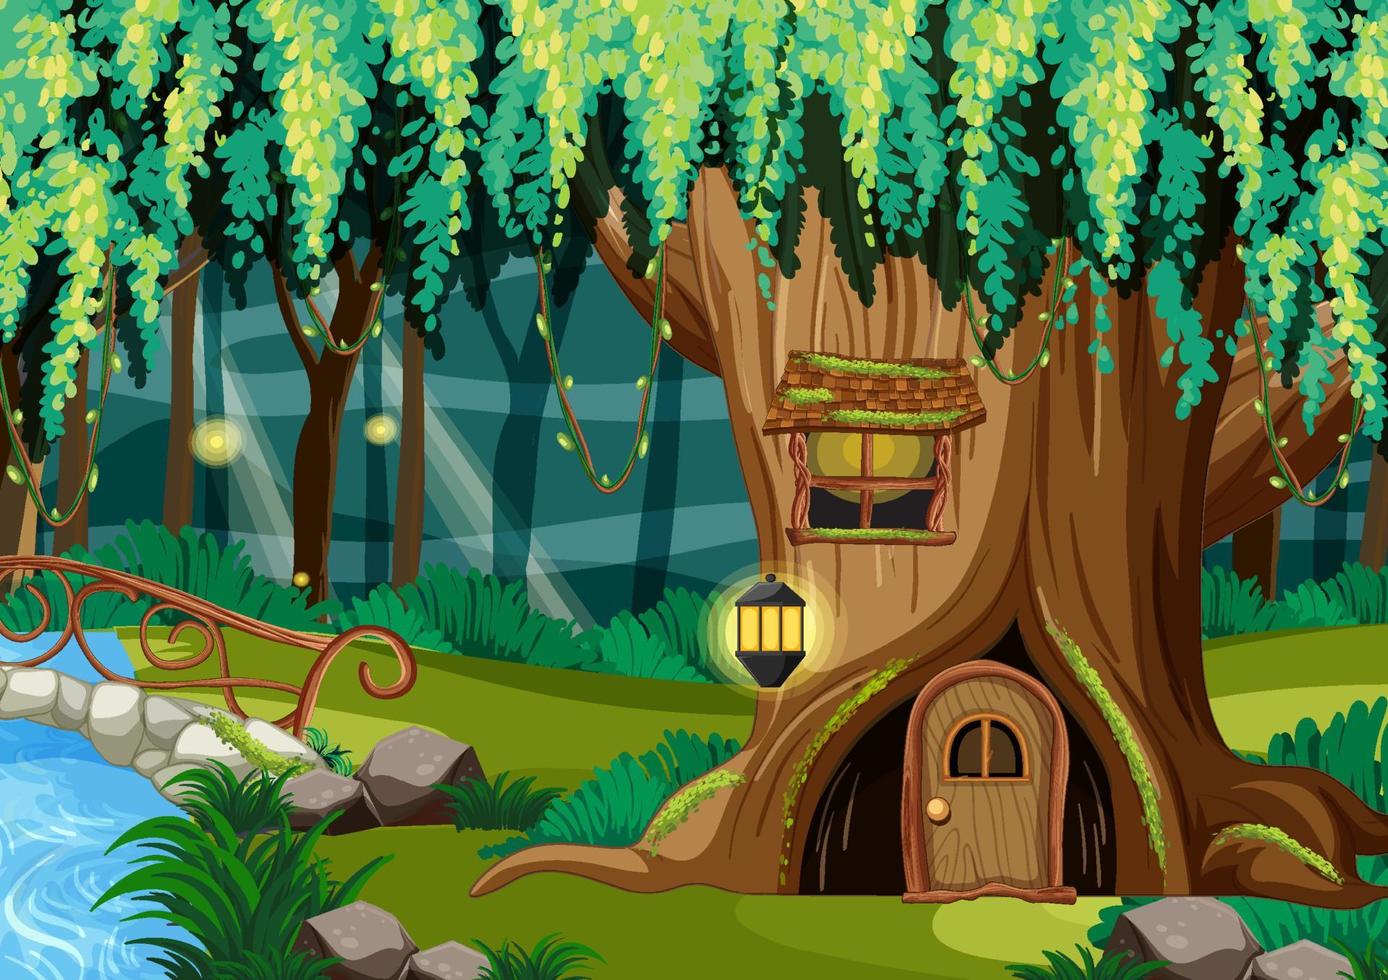 cena de fantasia de floresta com casa na árvore vazia vetor